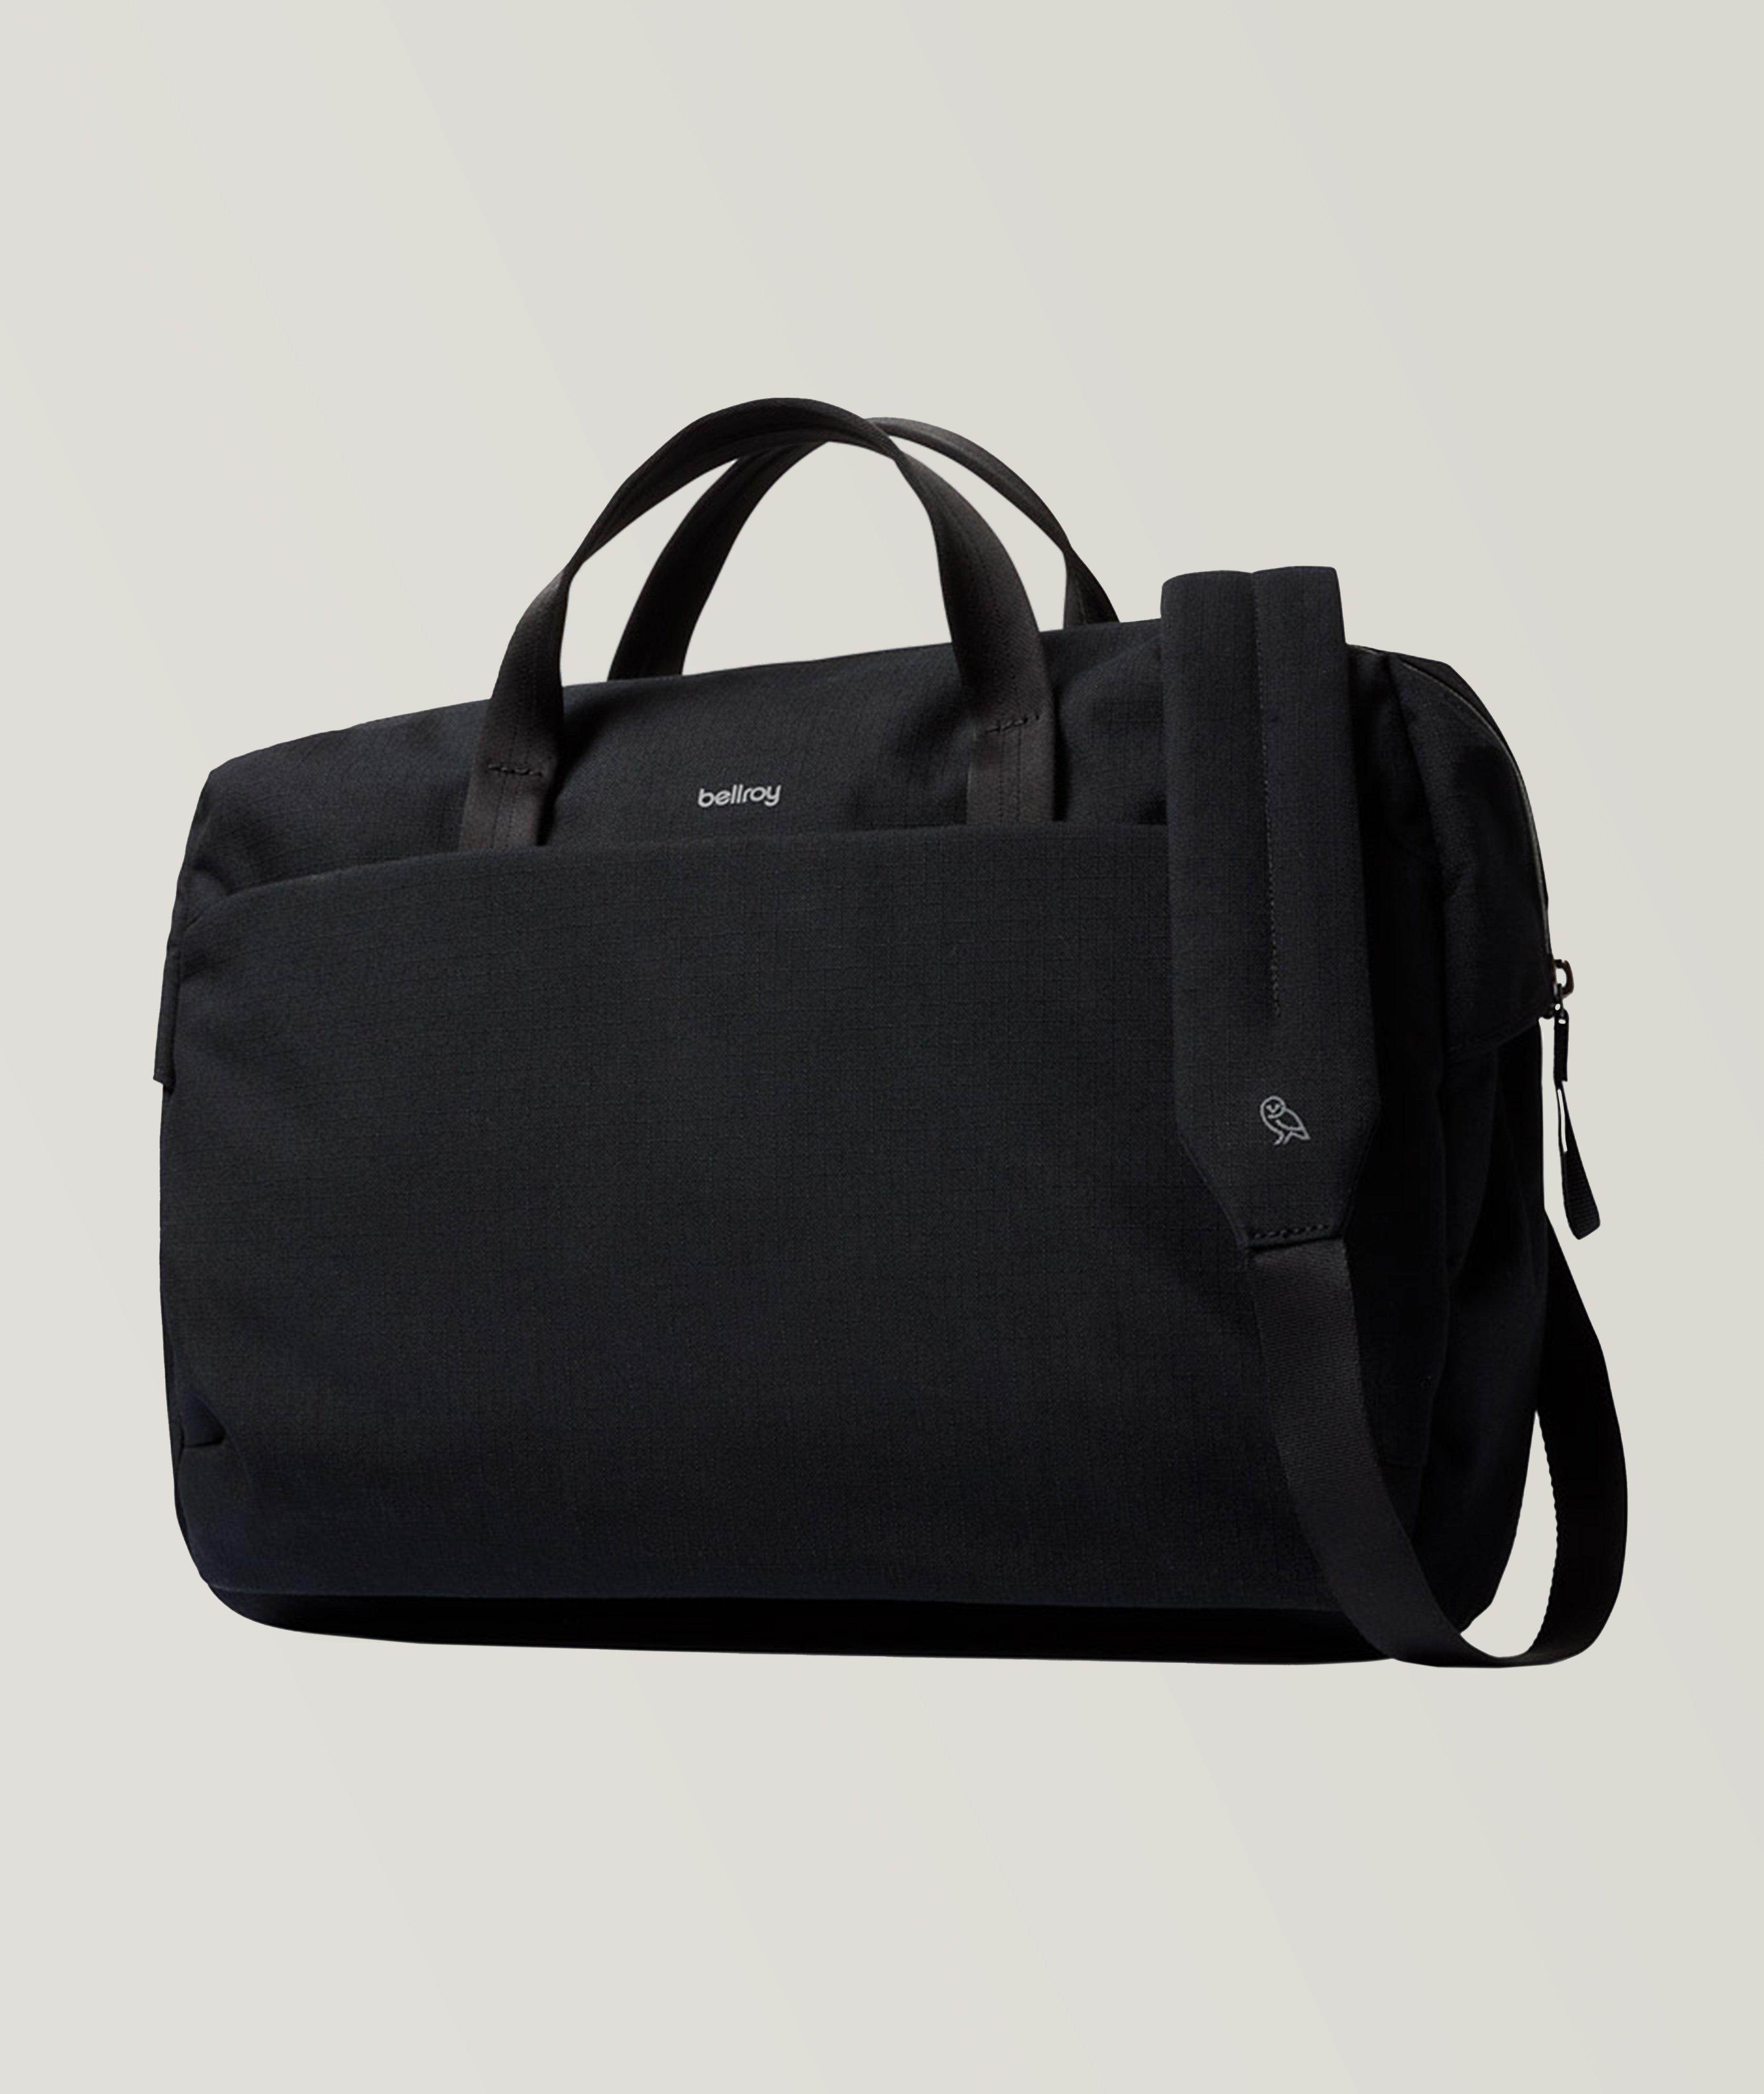 Bellroy Tech Briefcase | Bags & Cases | Harry Rosen